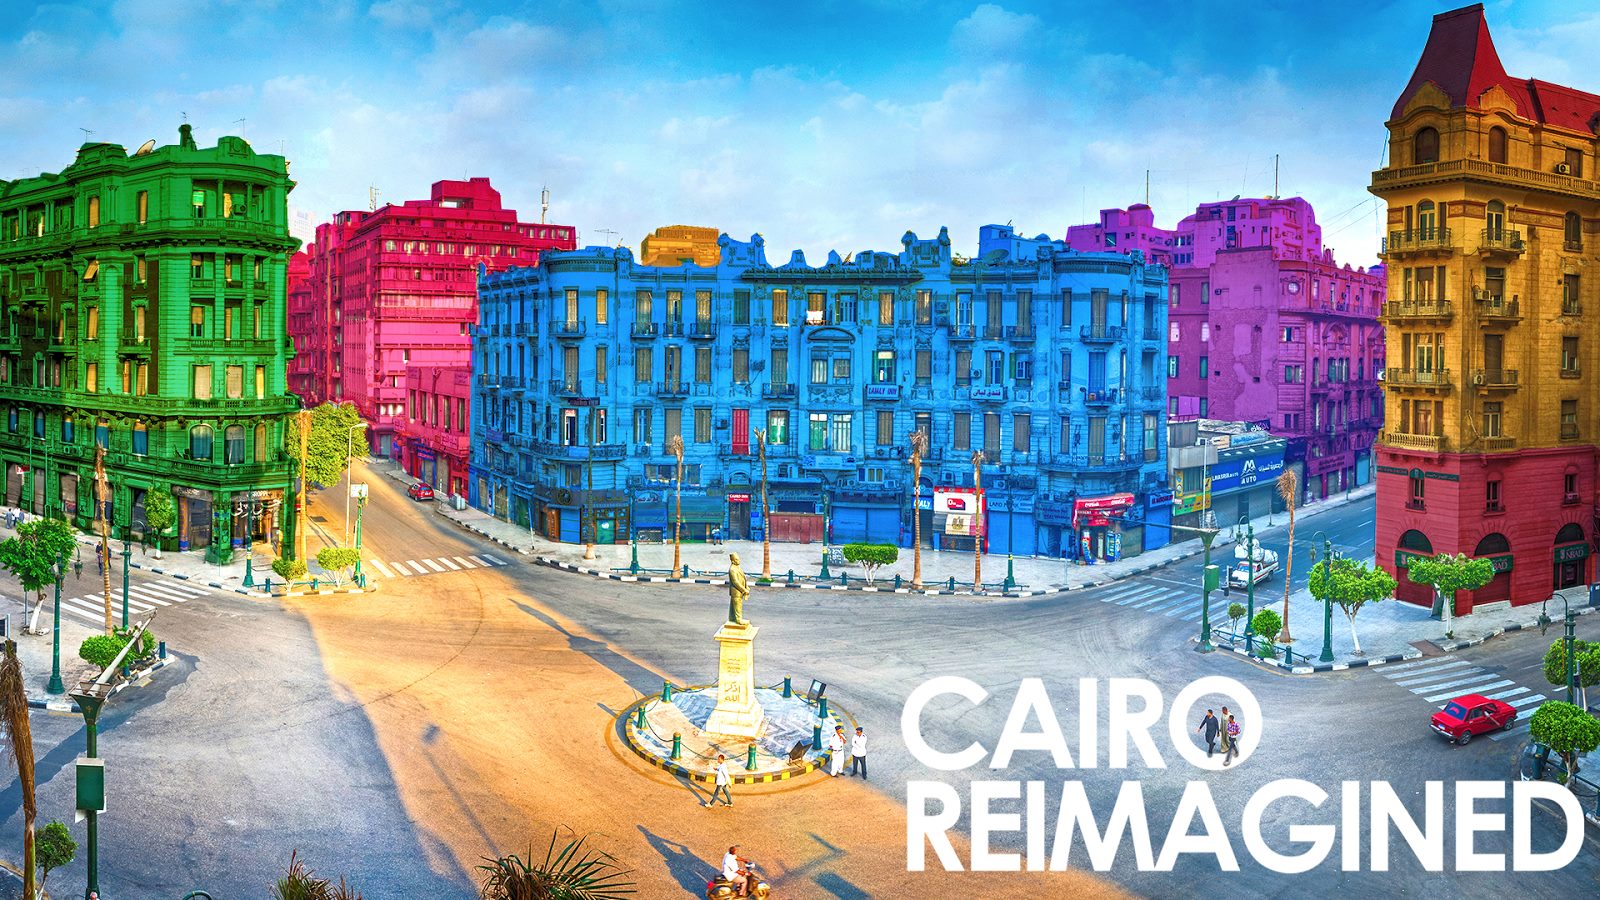 Cairo Reimagined